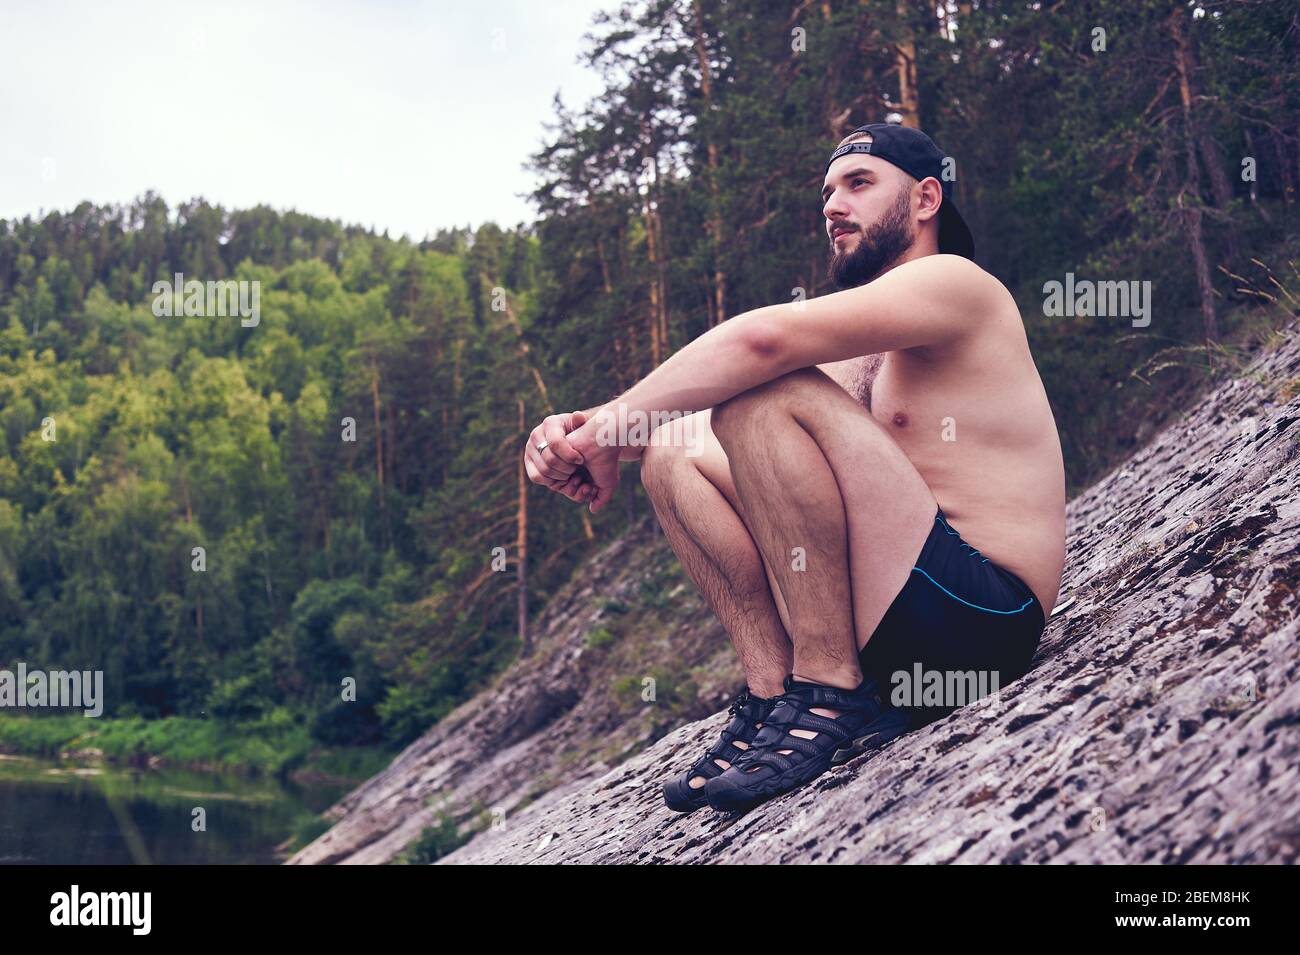 Profiter de la vie. Un jeune homme se trouve dans un bivouac dans la forêt, détente, vacances, concept de style de vie Banque D'Images